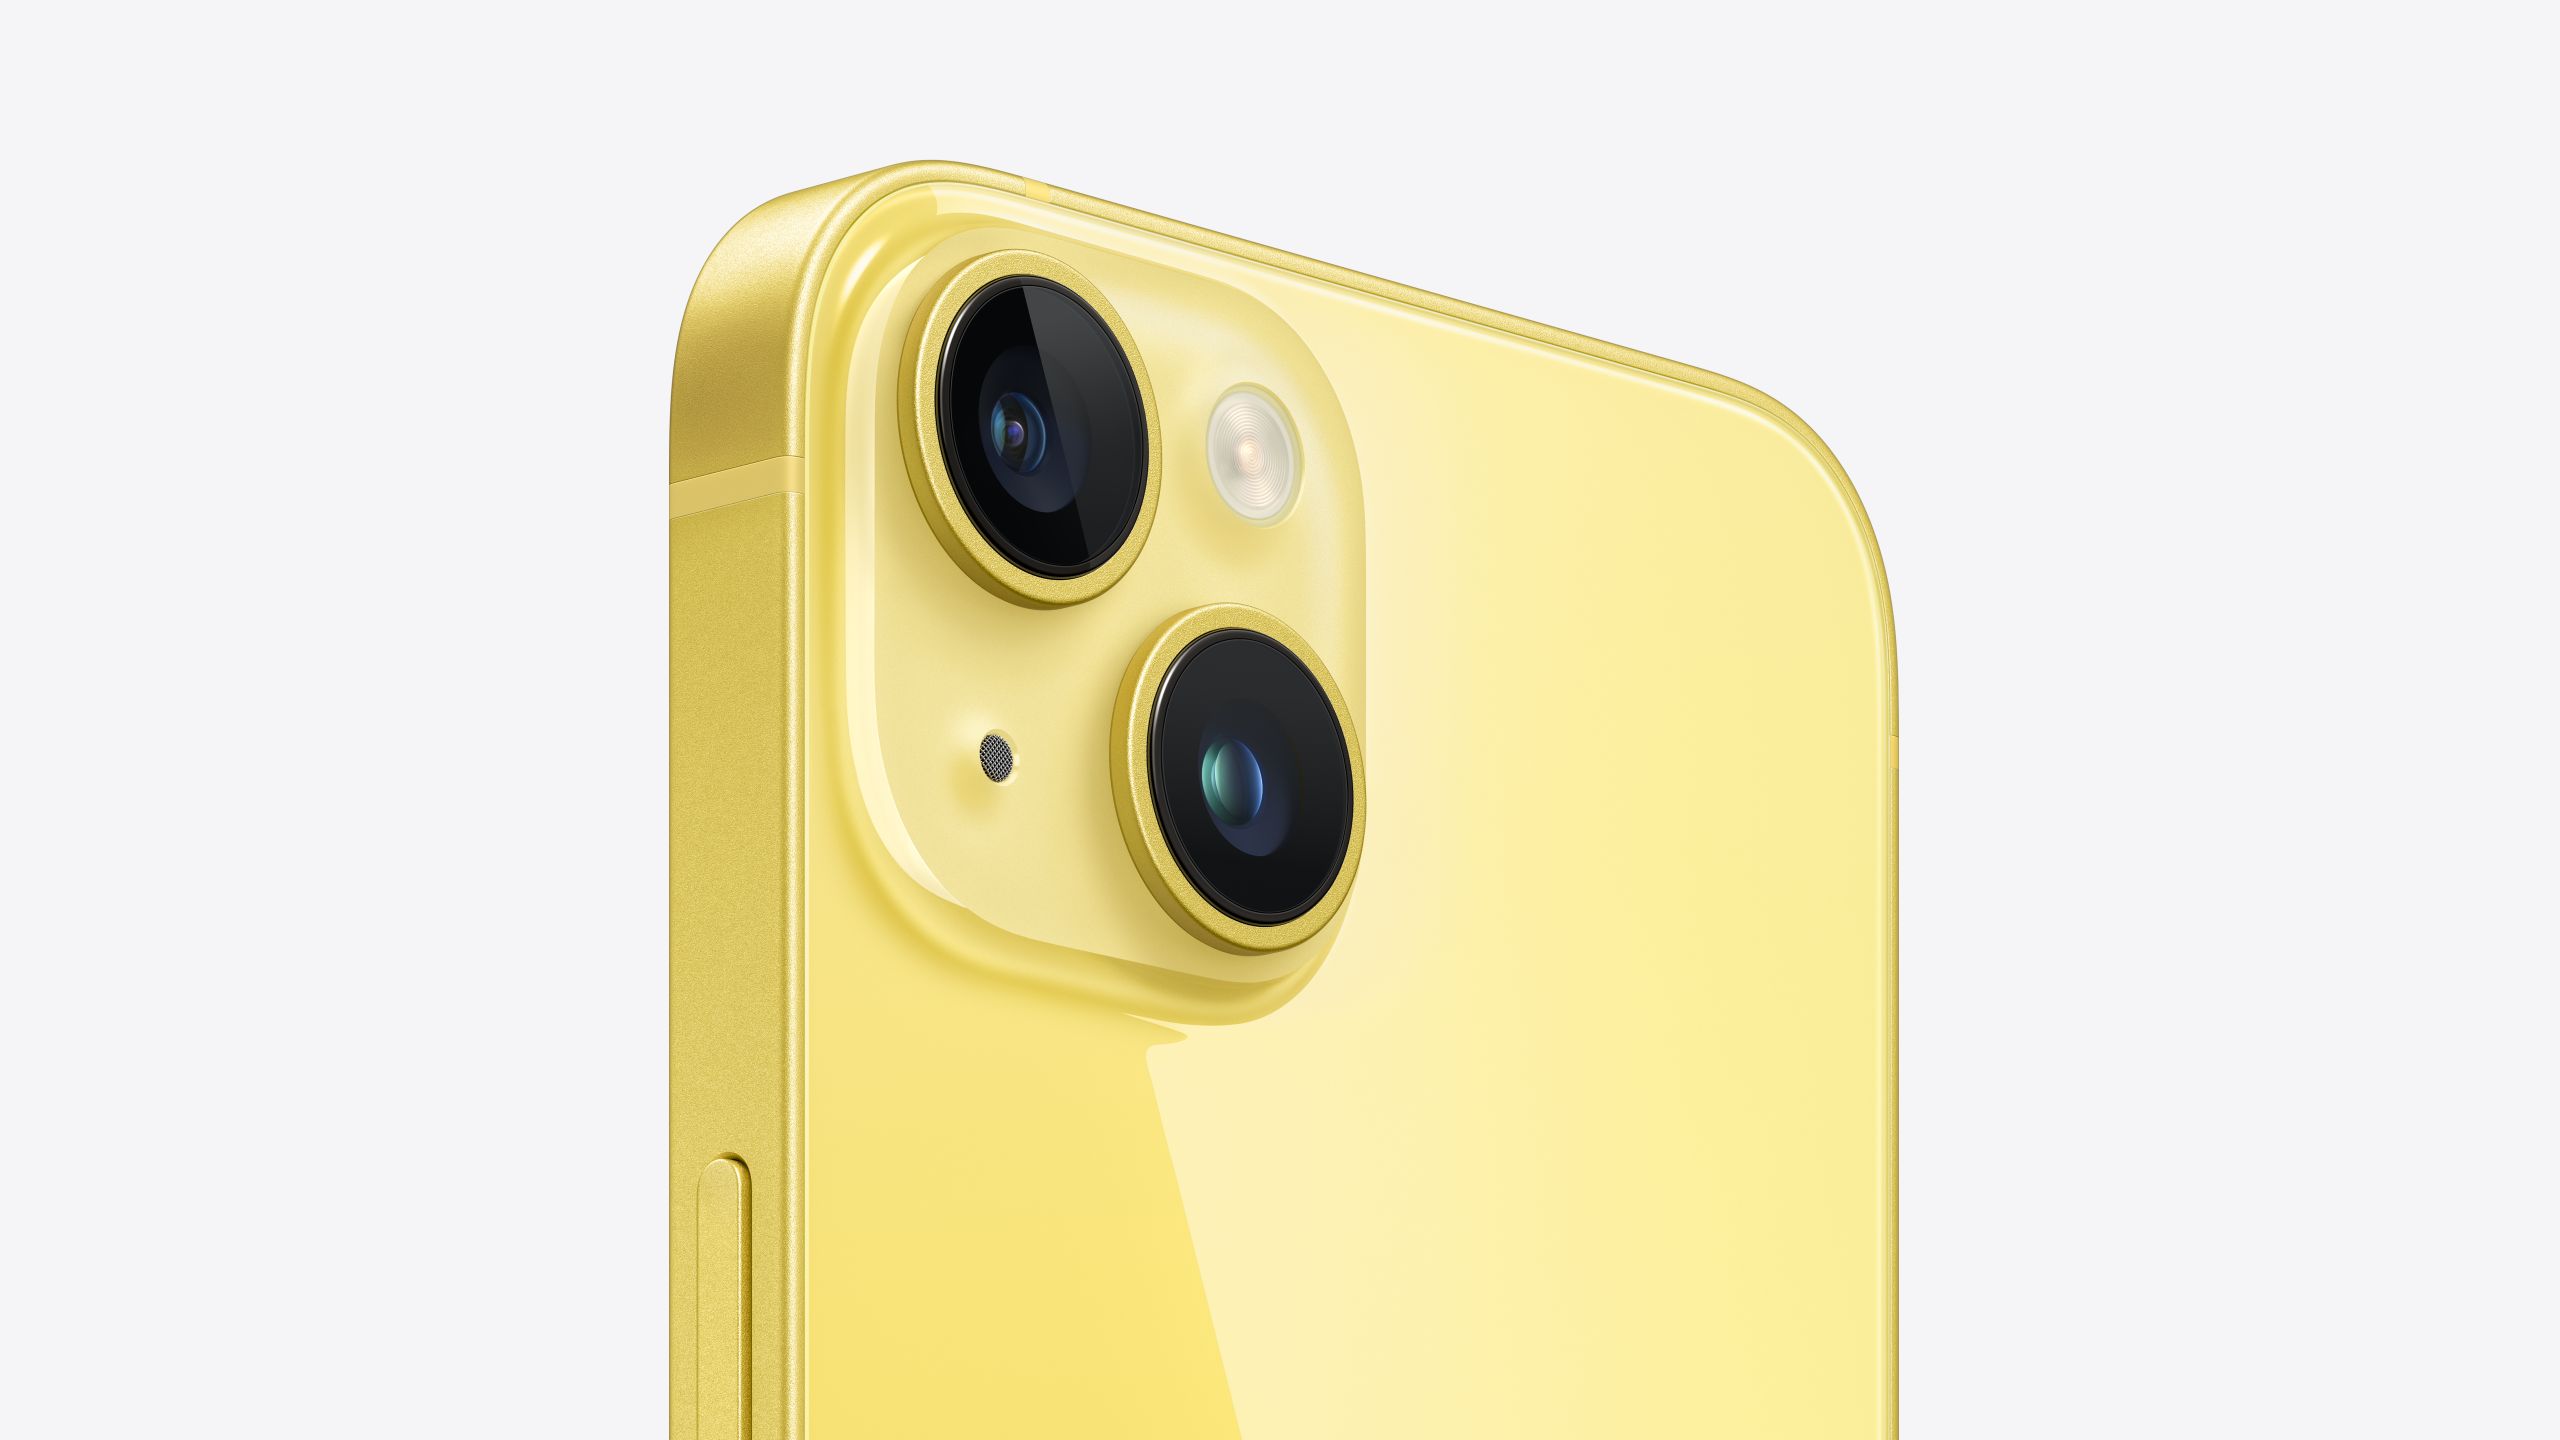 L'iPhone 14 e l'iPhone 14 Plus sono disponibili in giallo brillante primaverile - prezzo invariato